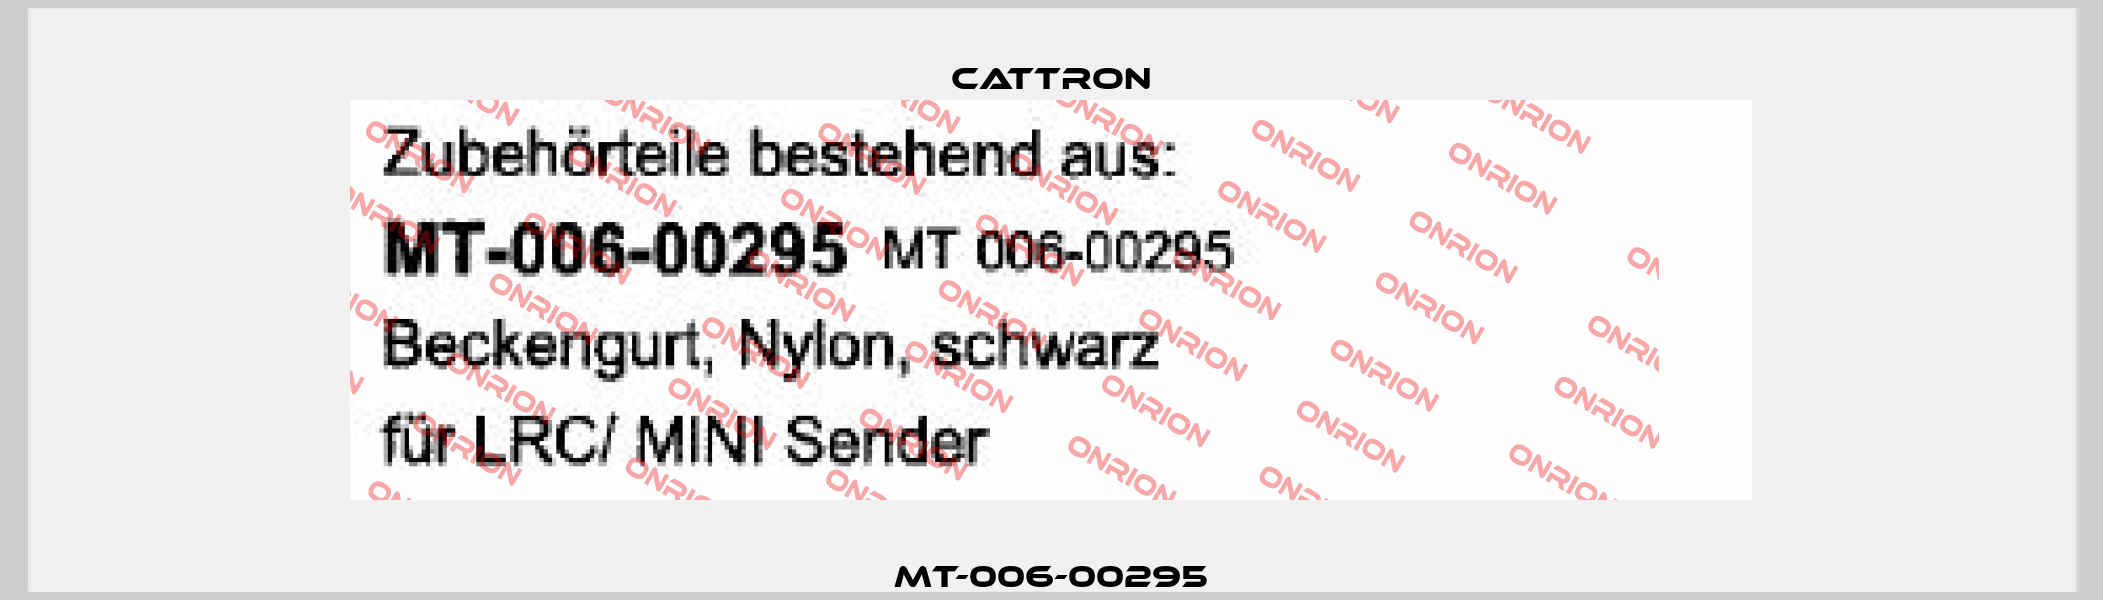 MT-006-00295 Cattron